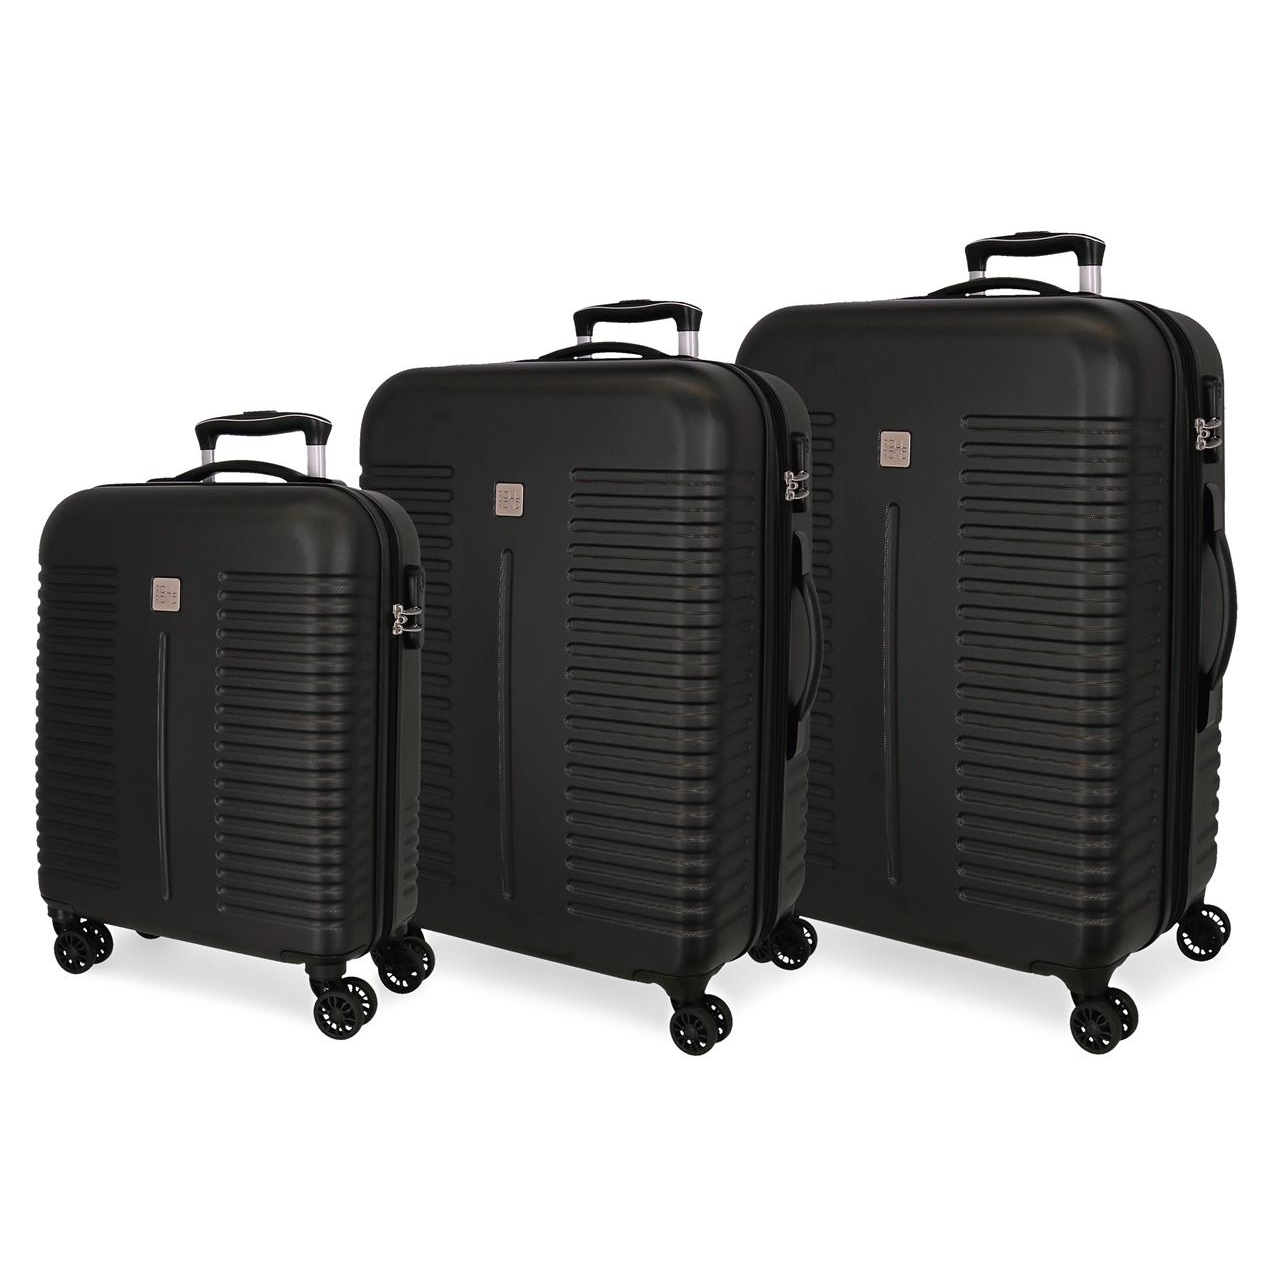 Paquete de 5 candados TSA para equipaje con combinación de 4 dígitos, juego  de alta resistencia para viajes, equipaje, maletas y mochilas, color negro